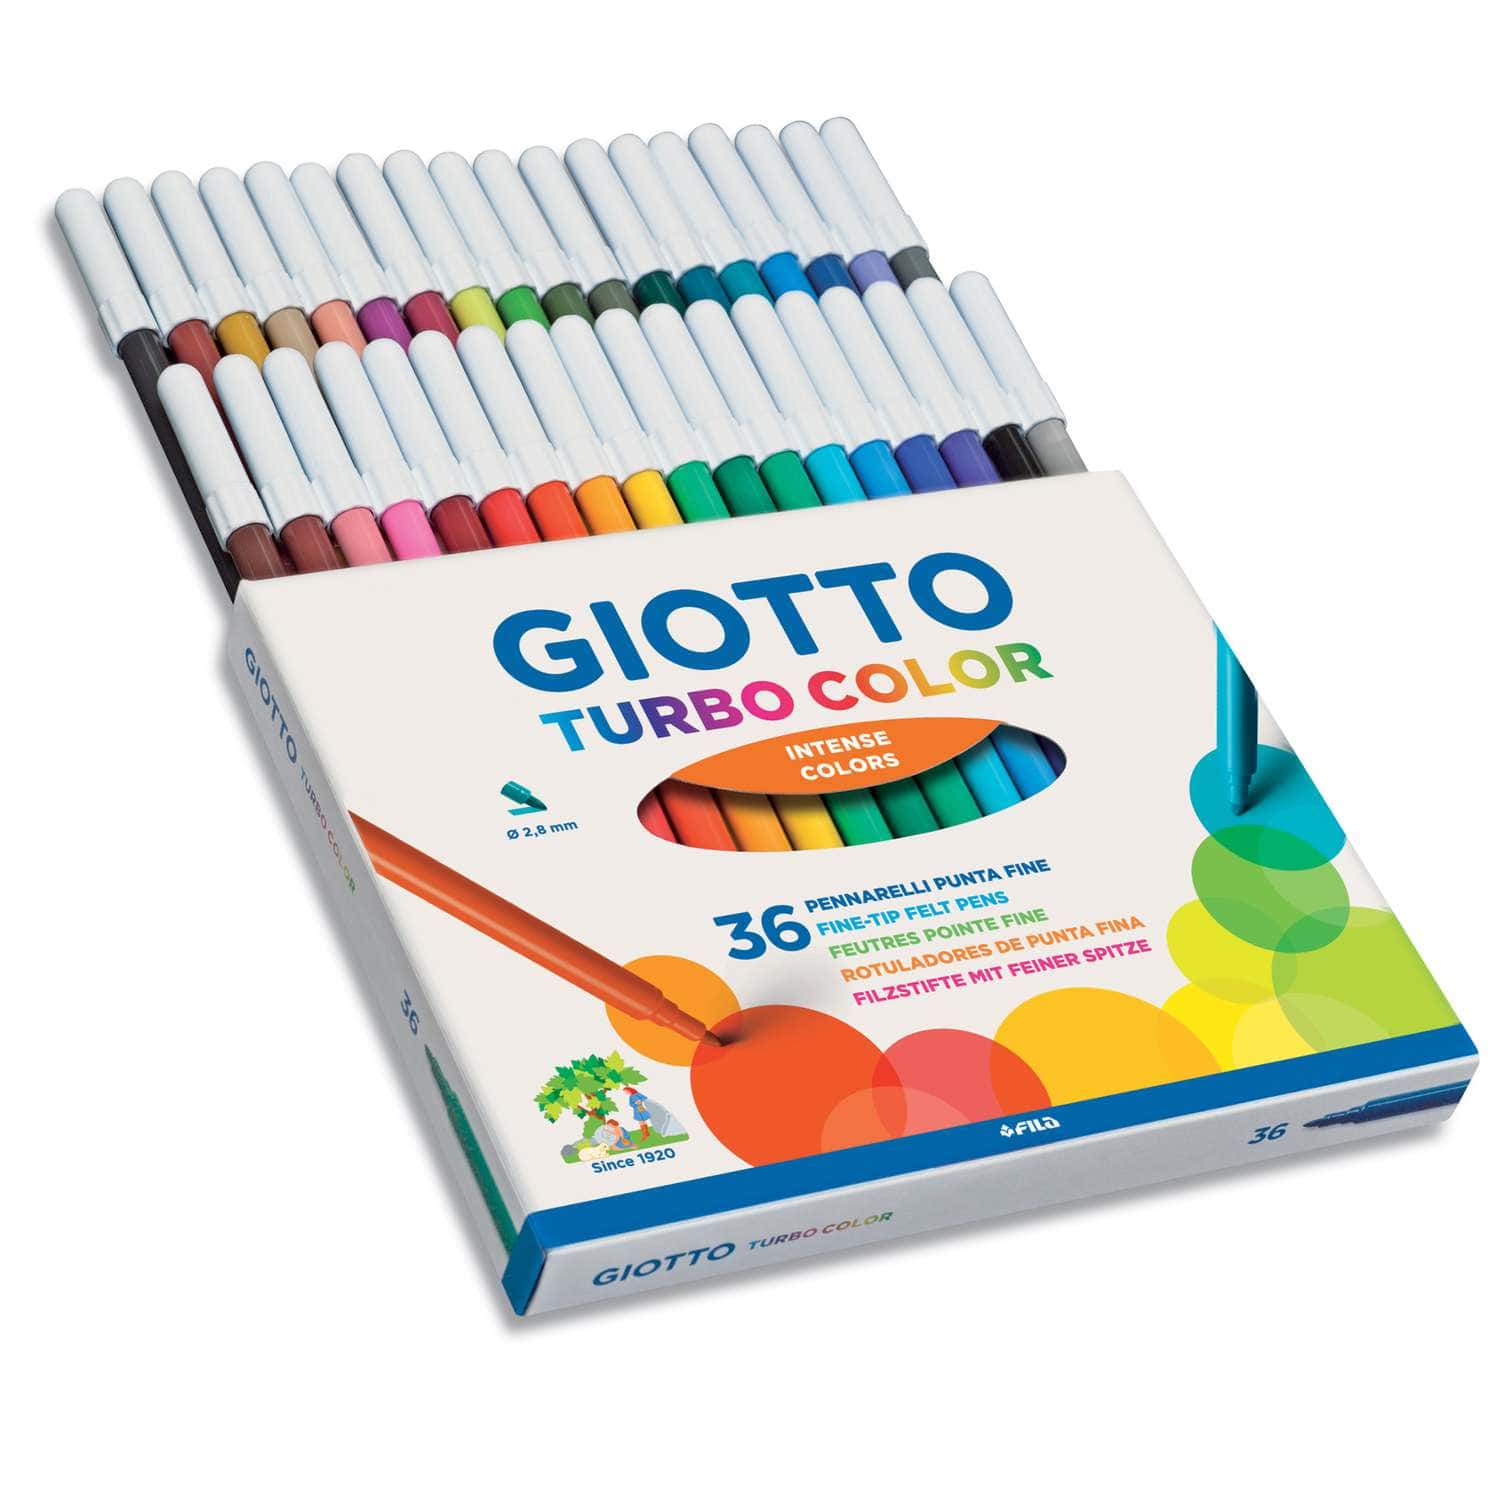 Turbo Soft Brush Pen Intense 10-set